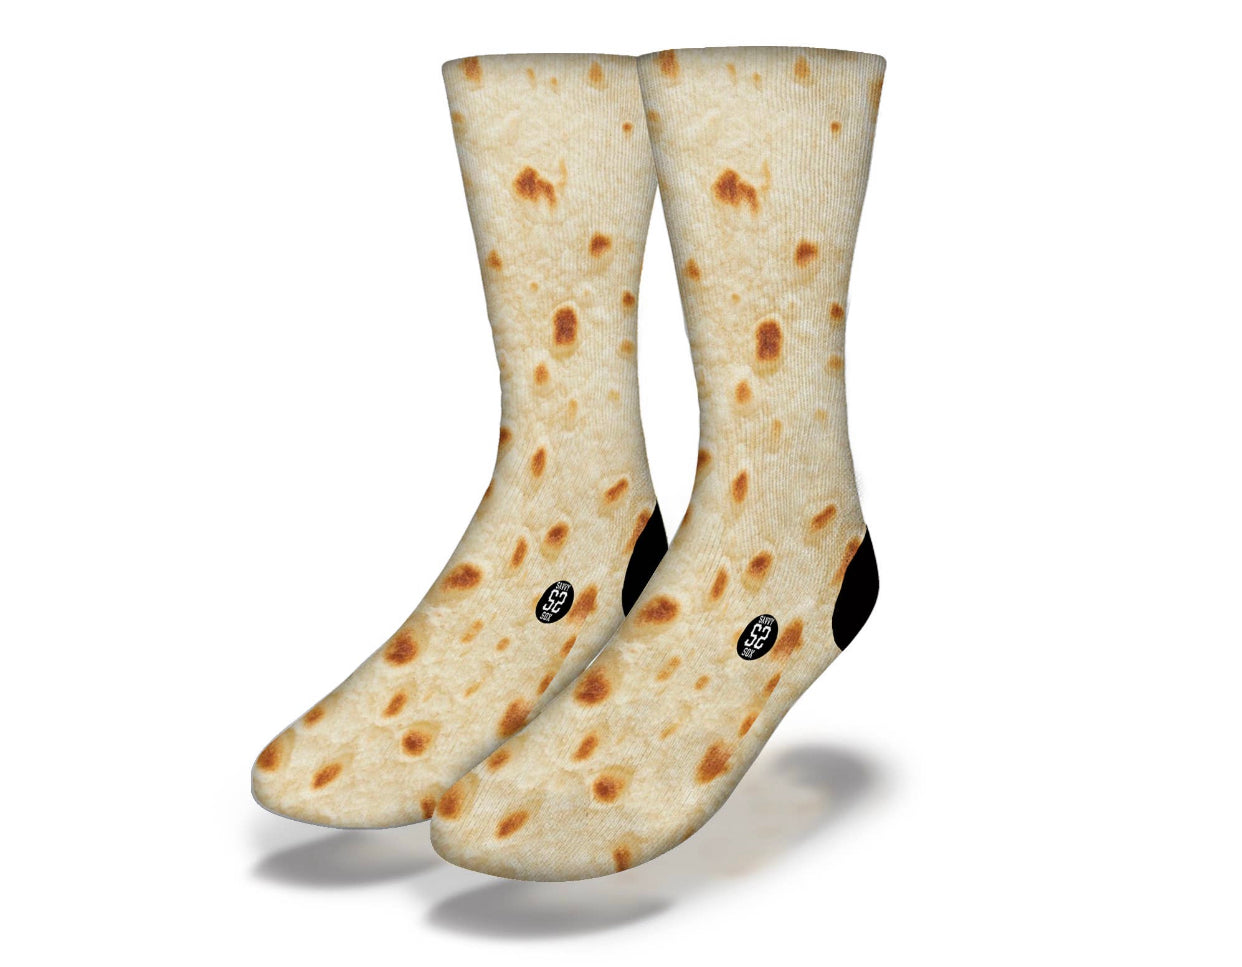 Men's mid calf tortilla socks with black accent color.